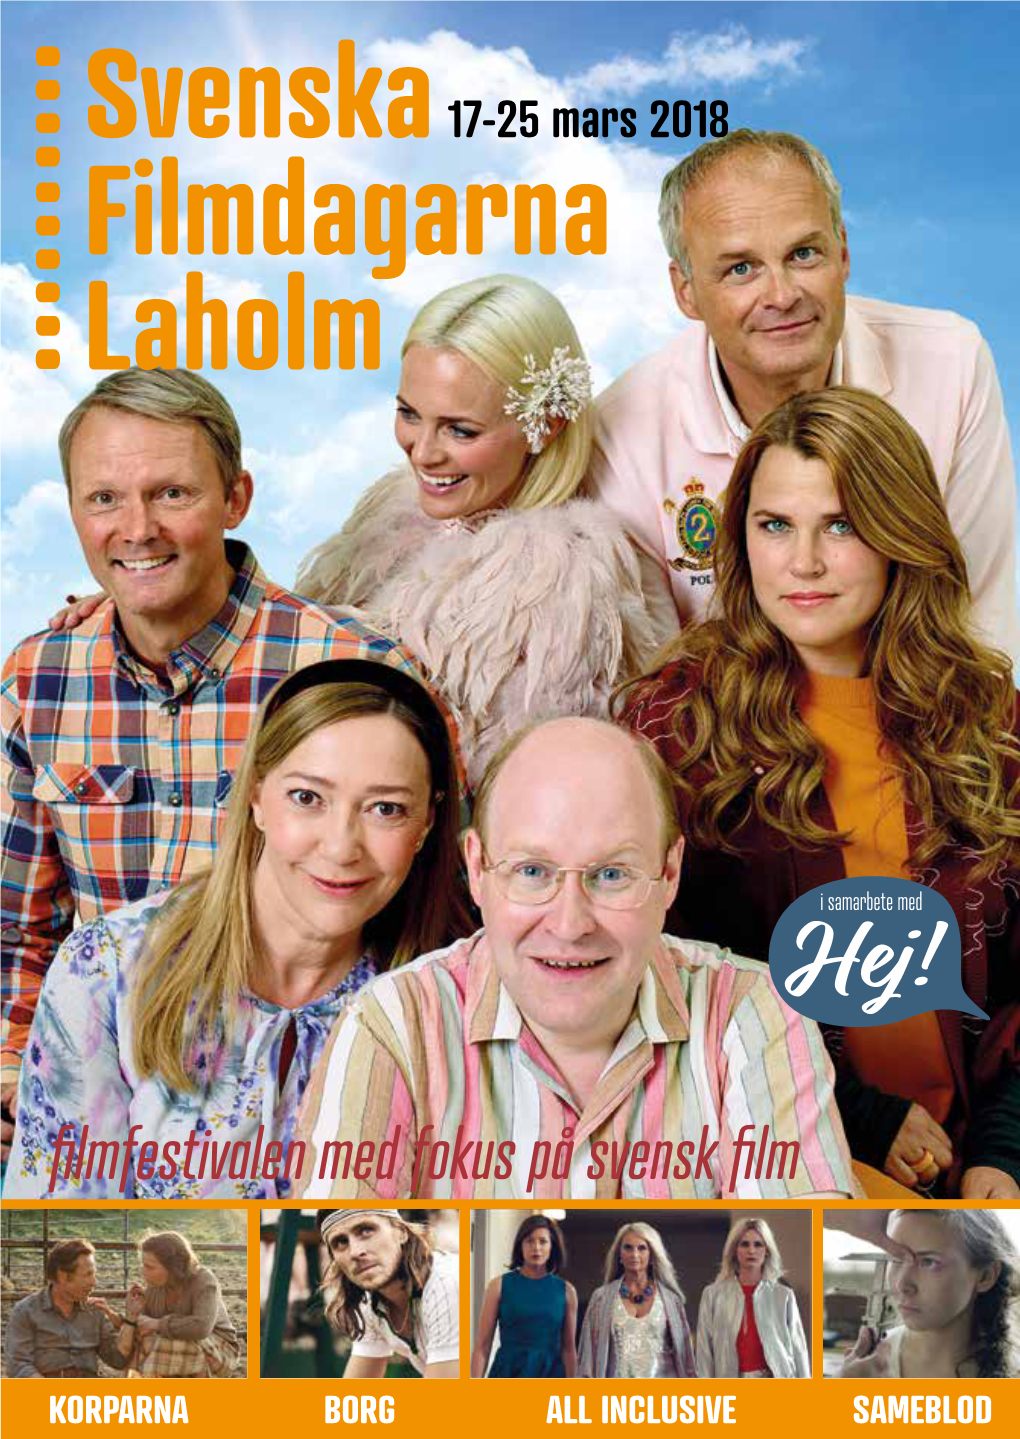 Filmdagar Svenska Laholm